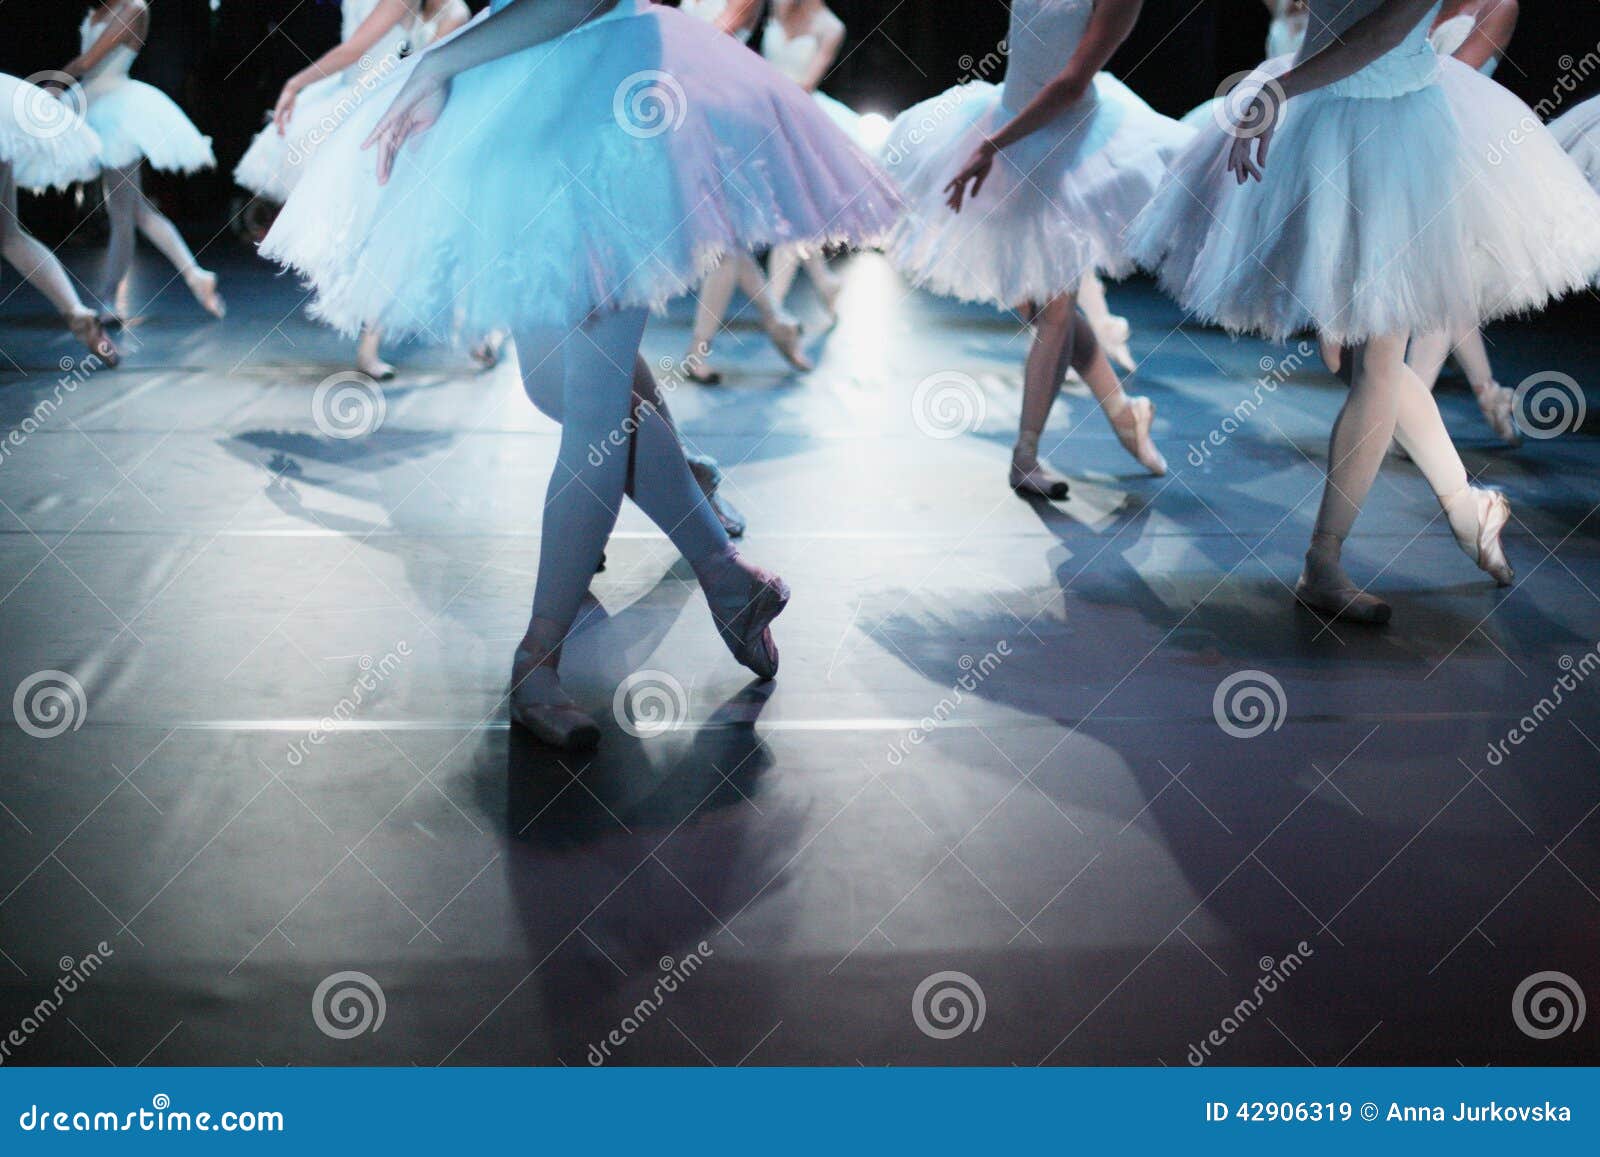 ballet choreography